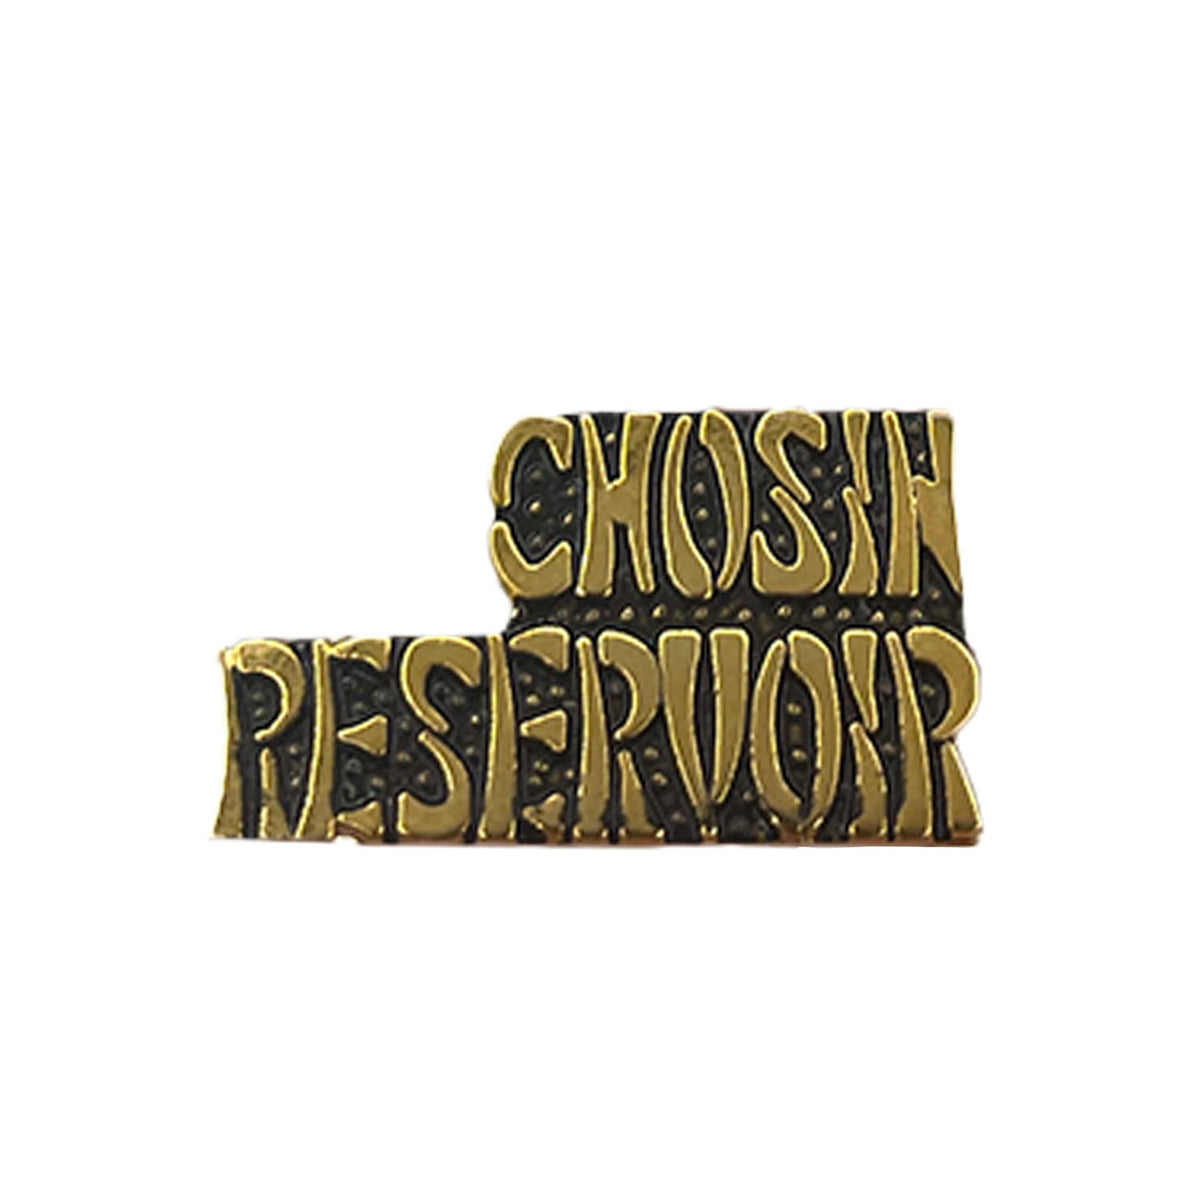 Chosin Reservoir Metal Pin